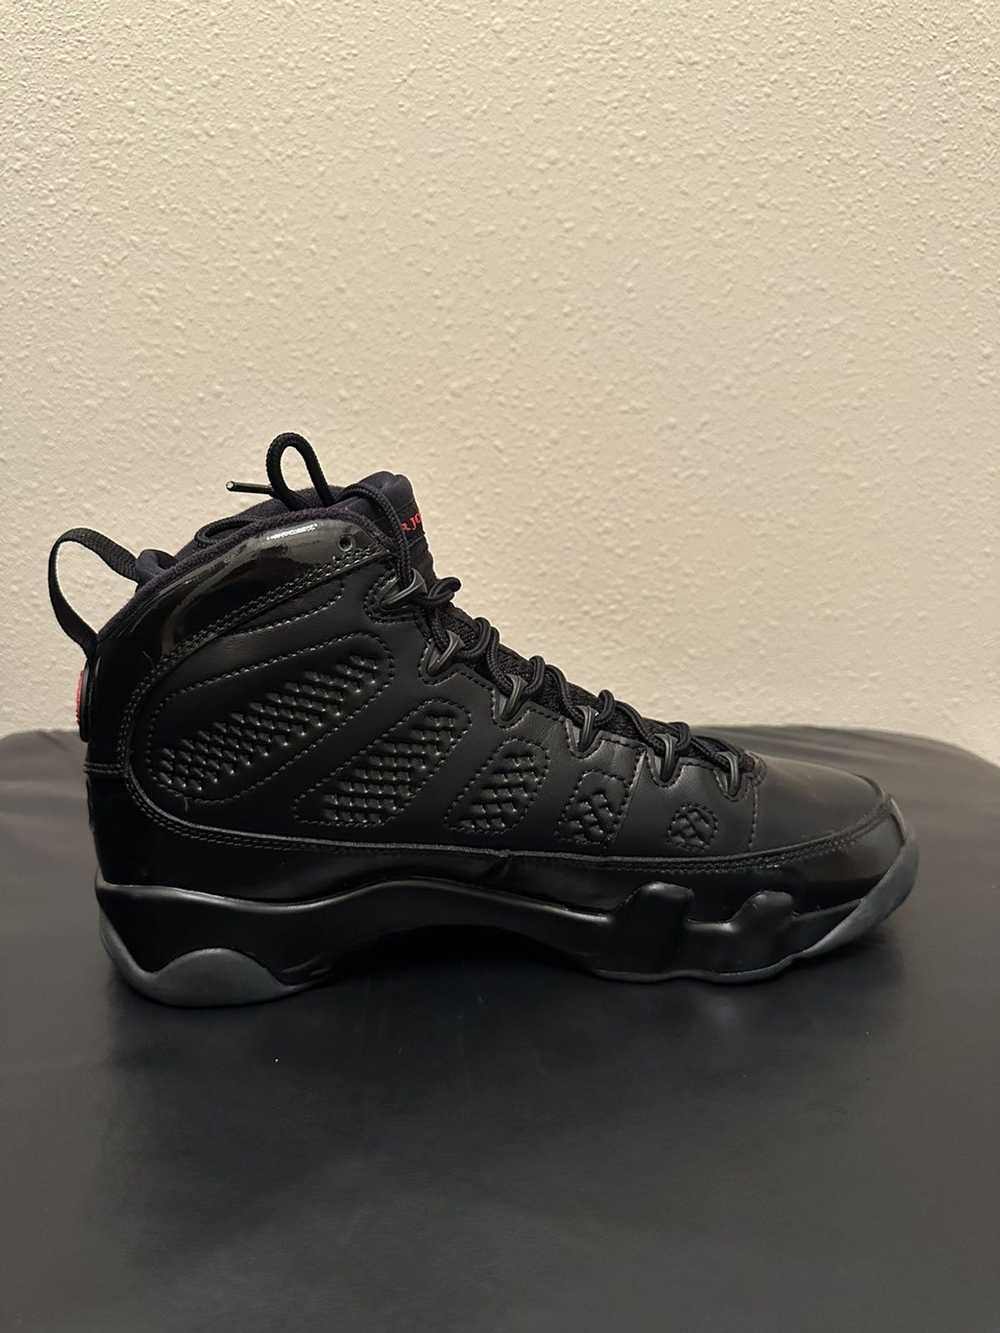 Jordan Brand × Nike Jordan 9 Retro Bred Patent - image 3